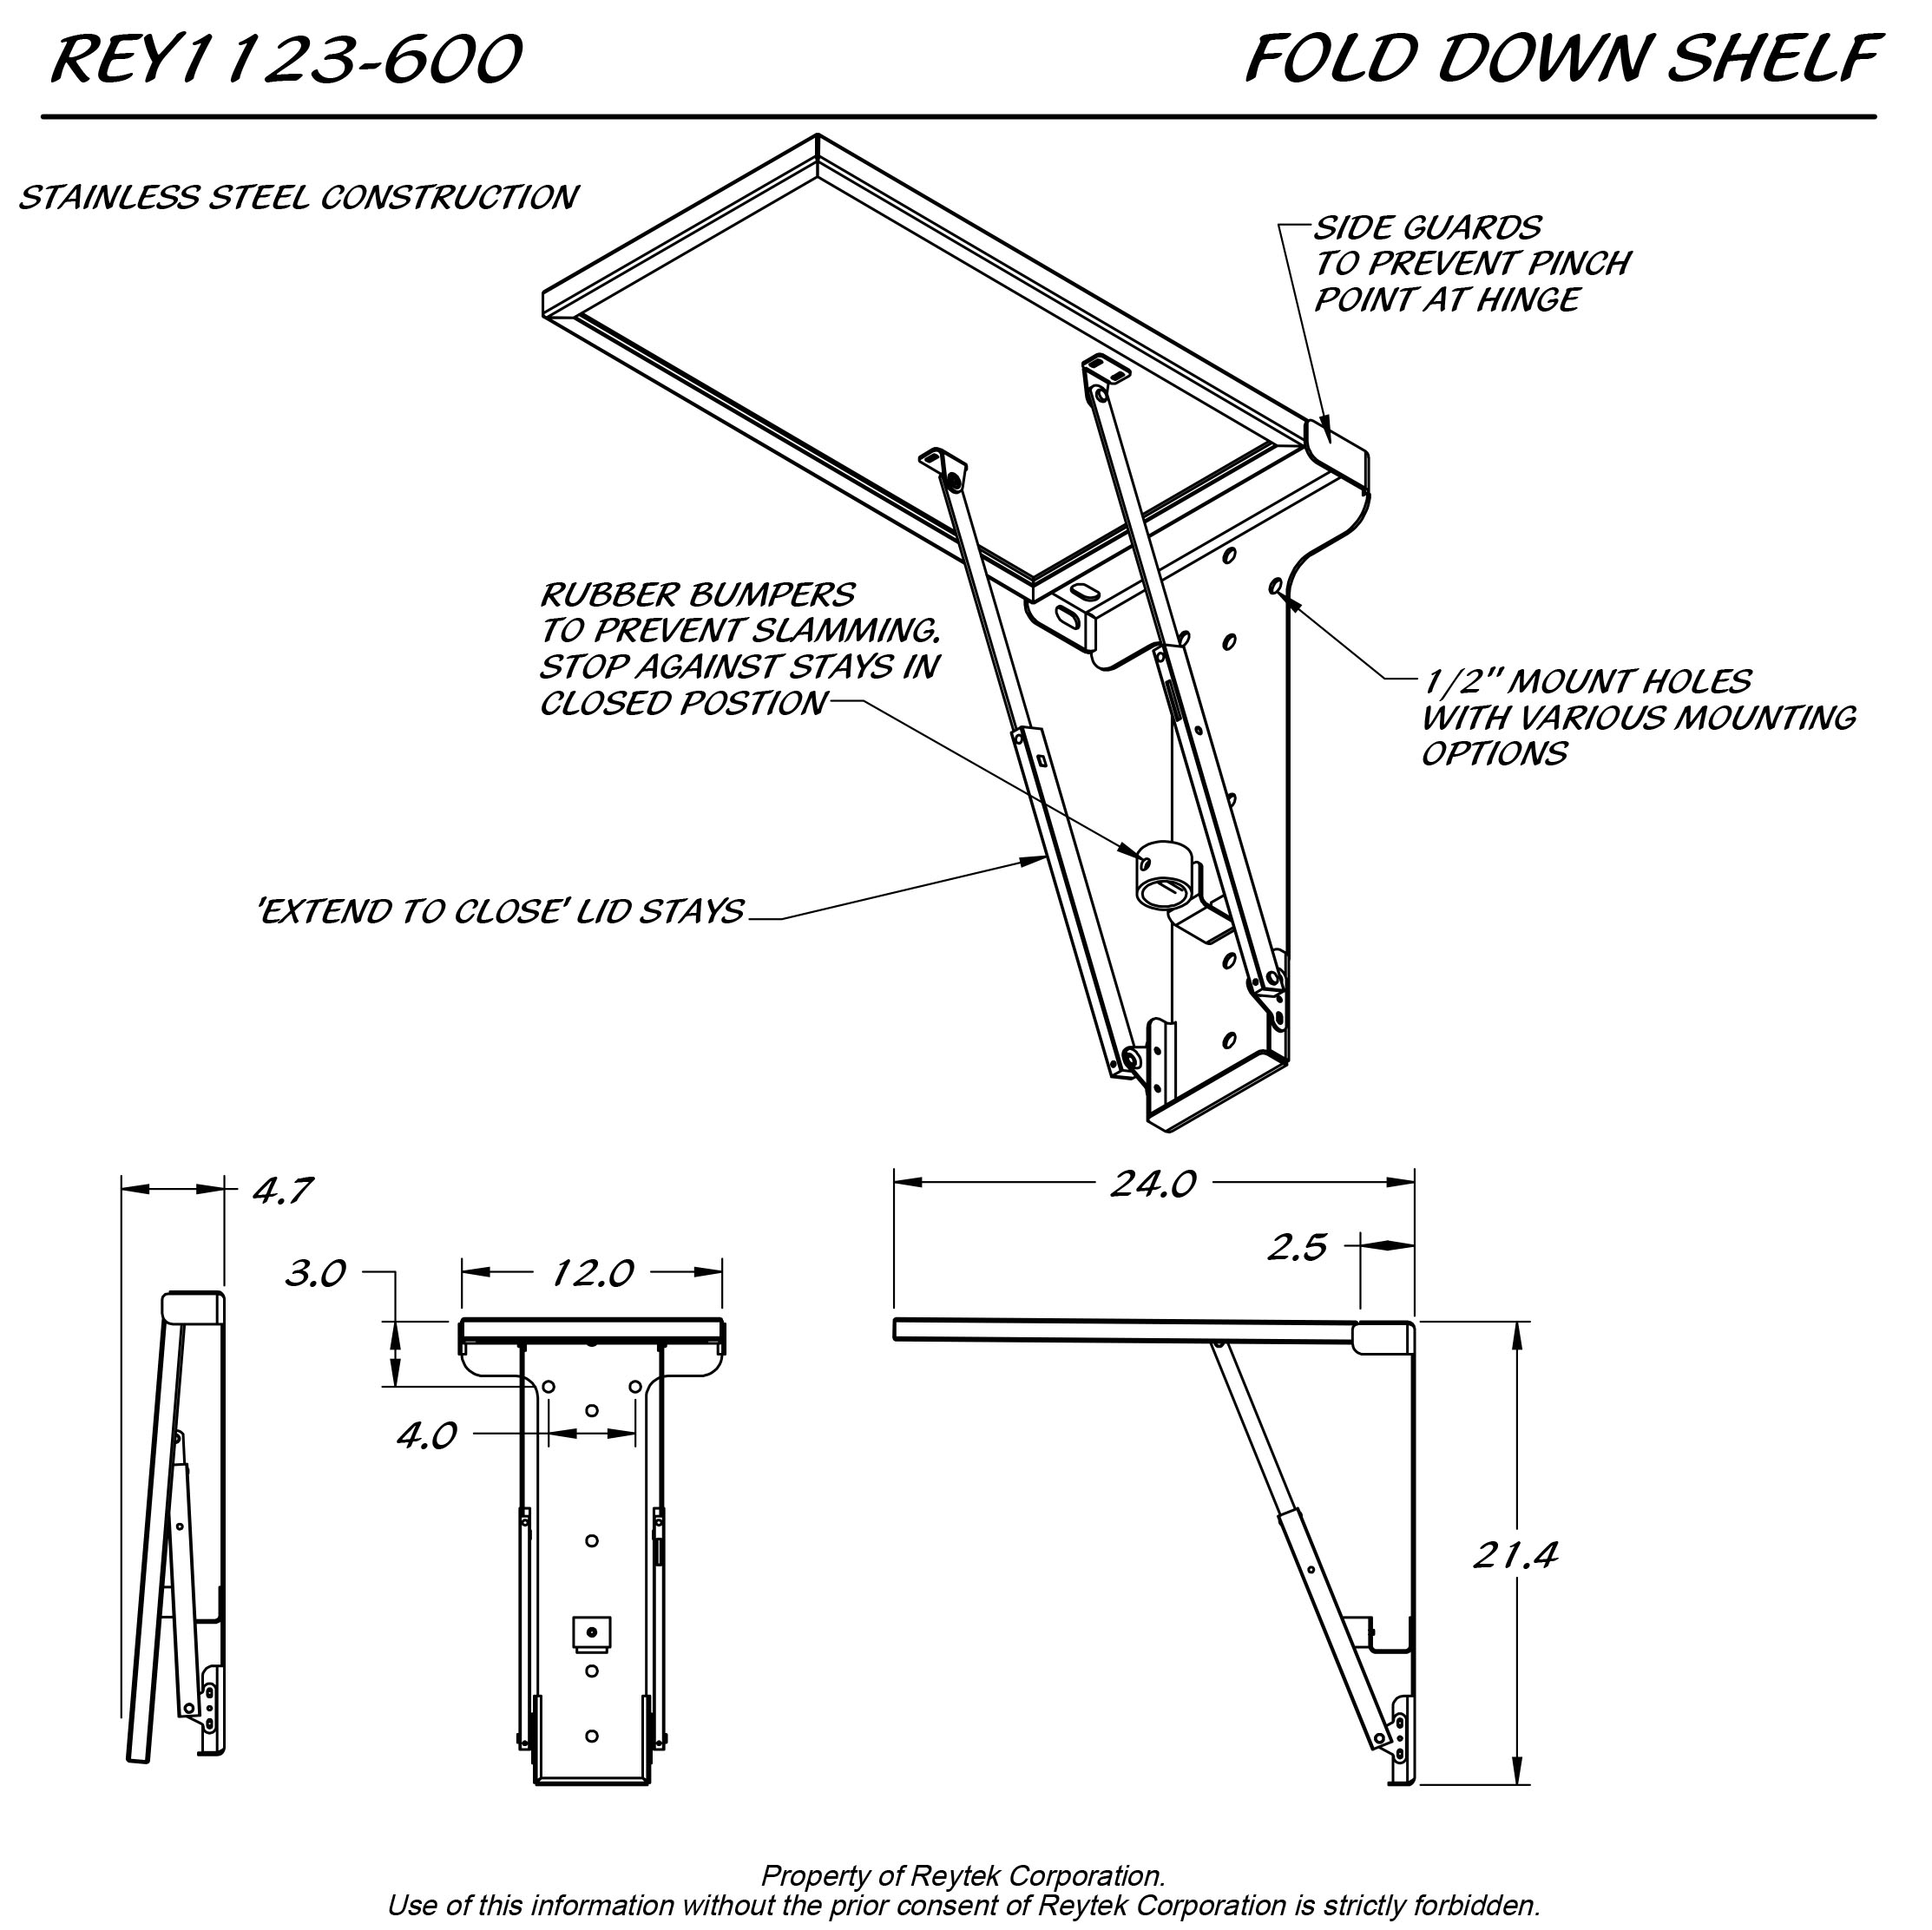 Fold Down Shelf REY1123-600 – 24 x 12 x 21.4 | Reytek